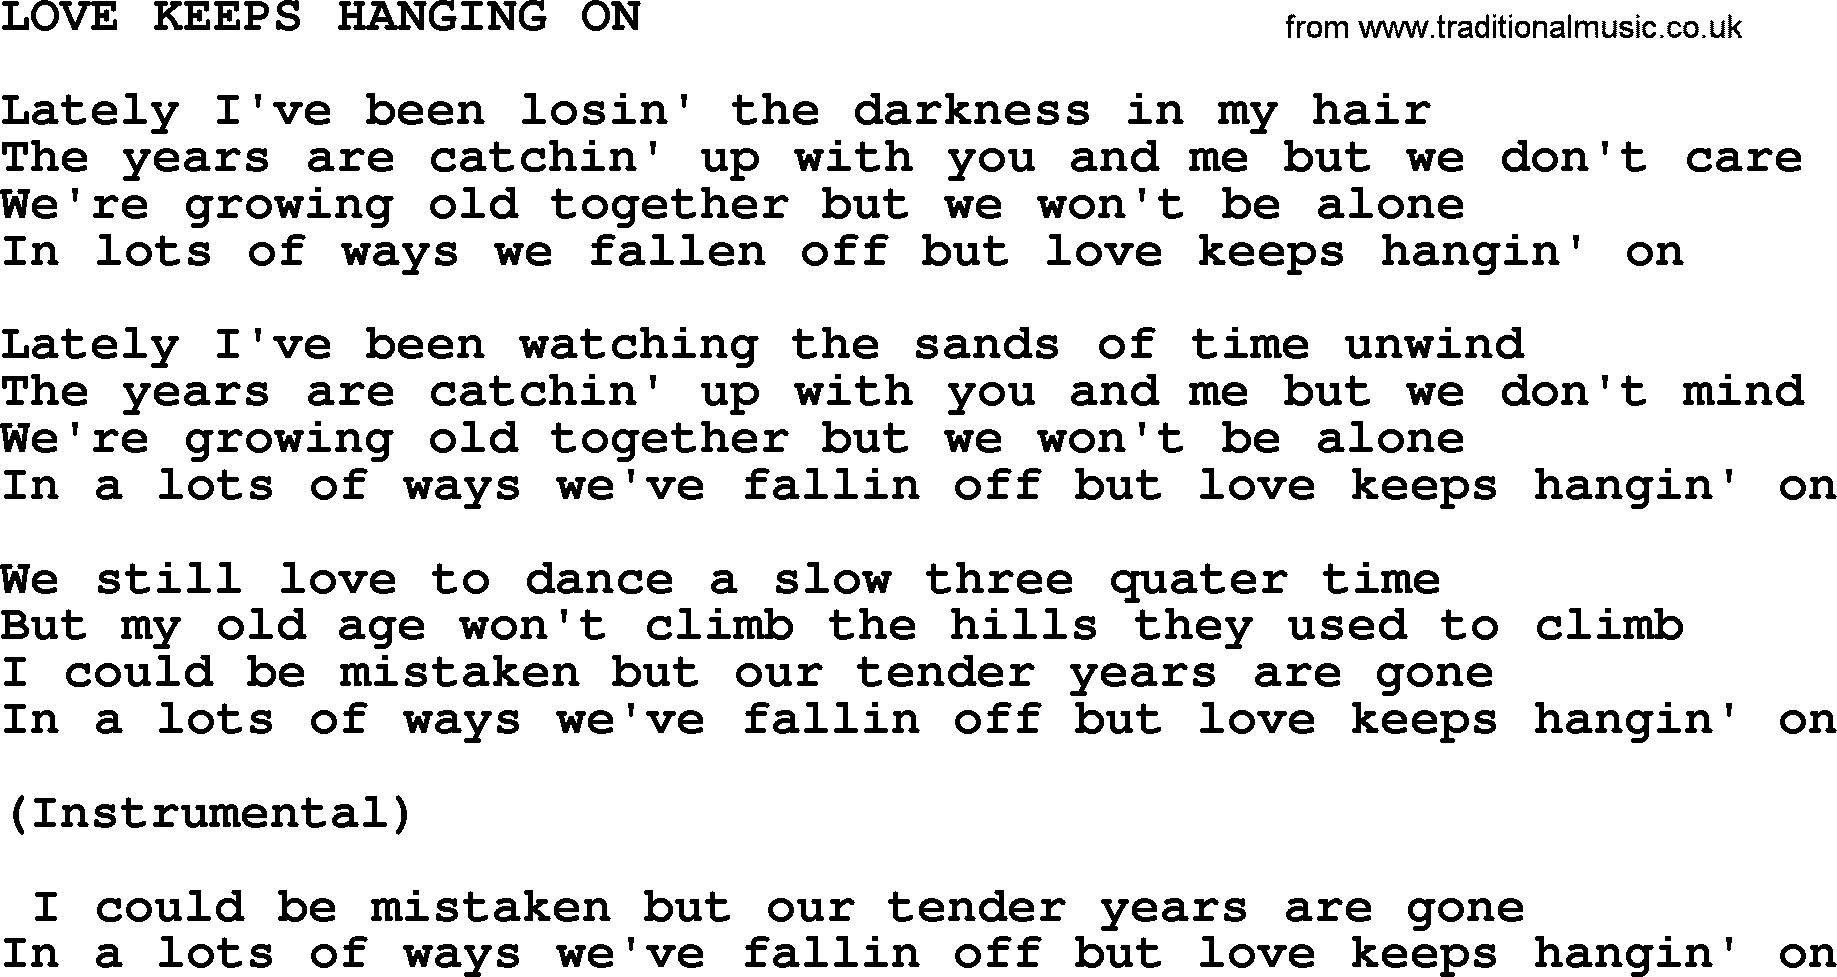 Merle Haggard song: Love Keeps Hanging On, lyrics.